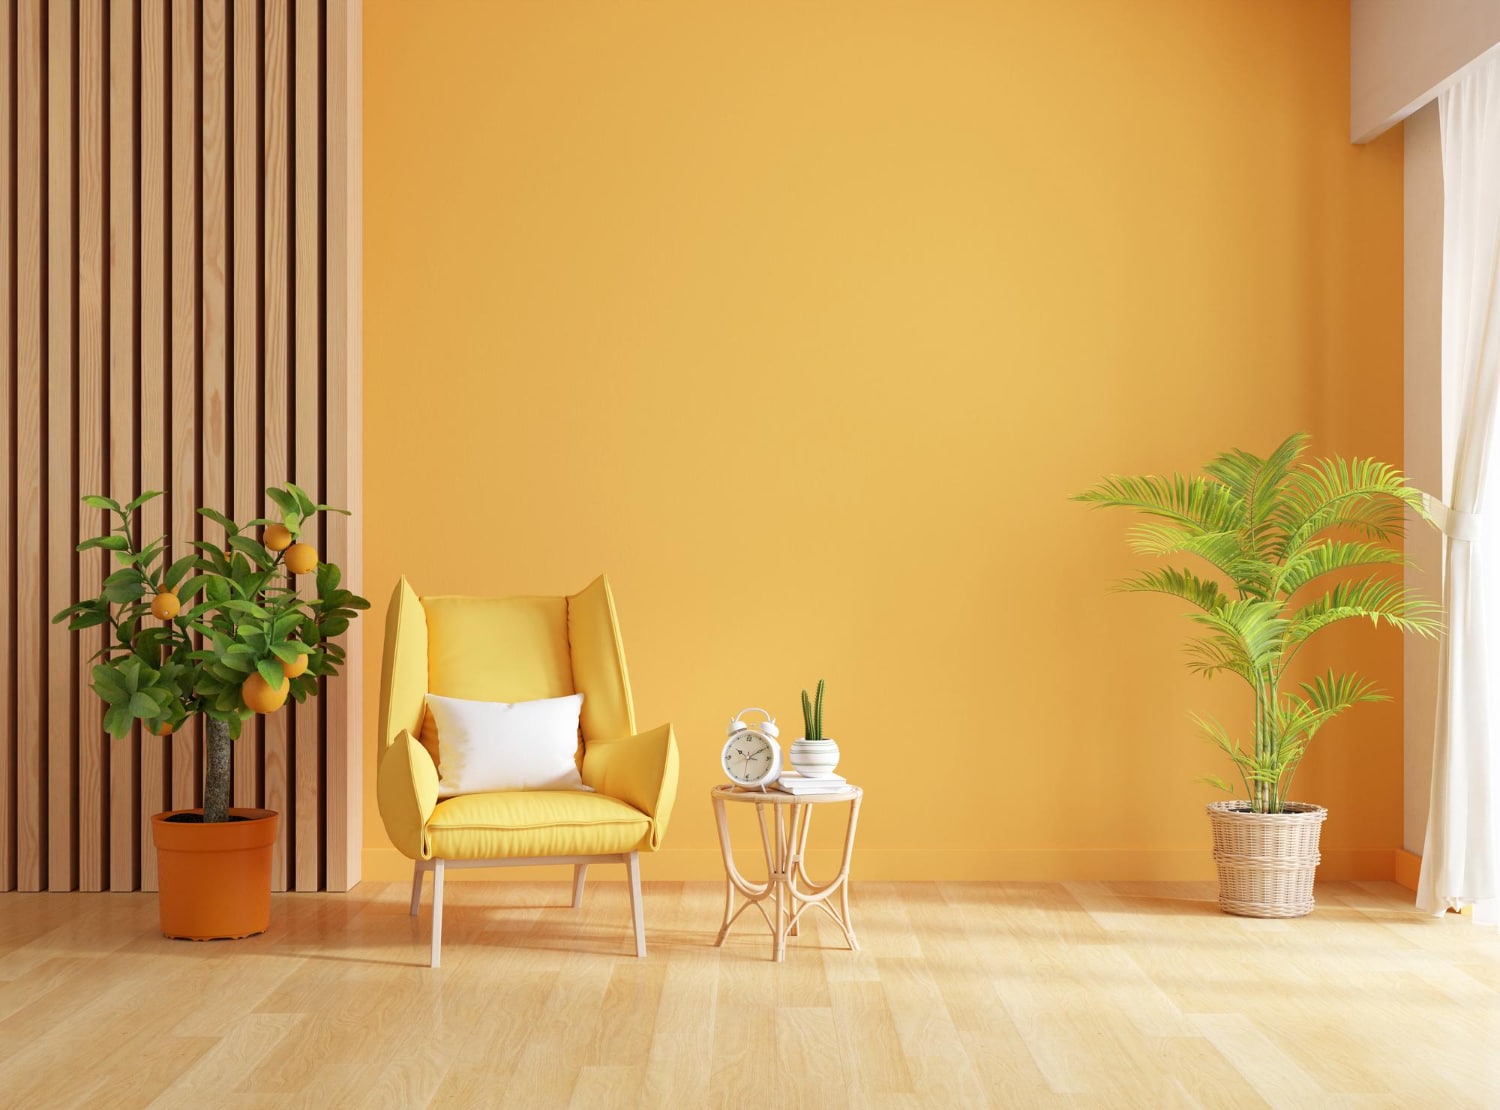 Pièce jaune, avec plante fauteuil jaune et plainte en bois pour décorer mur 